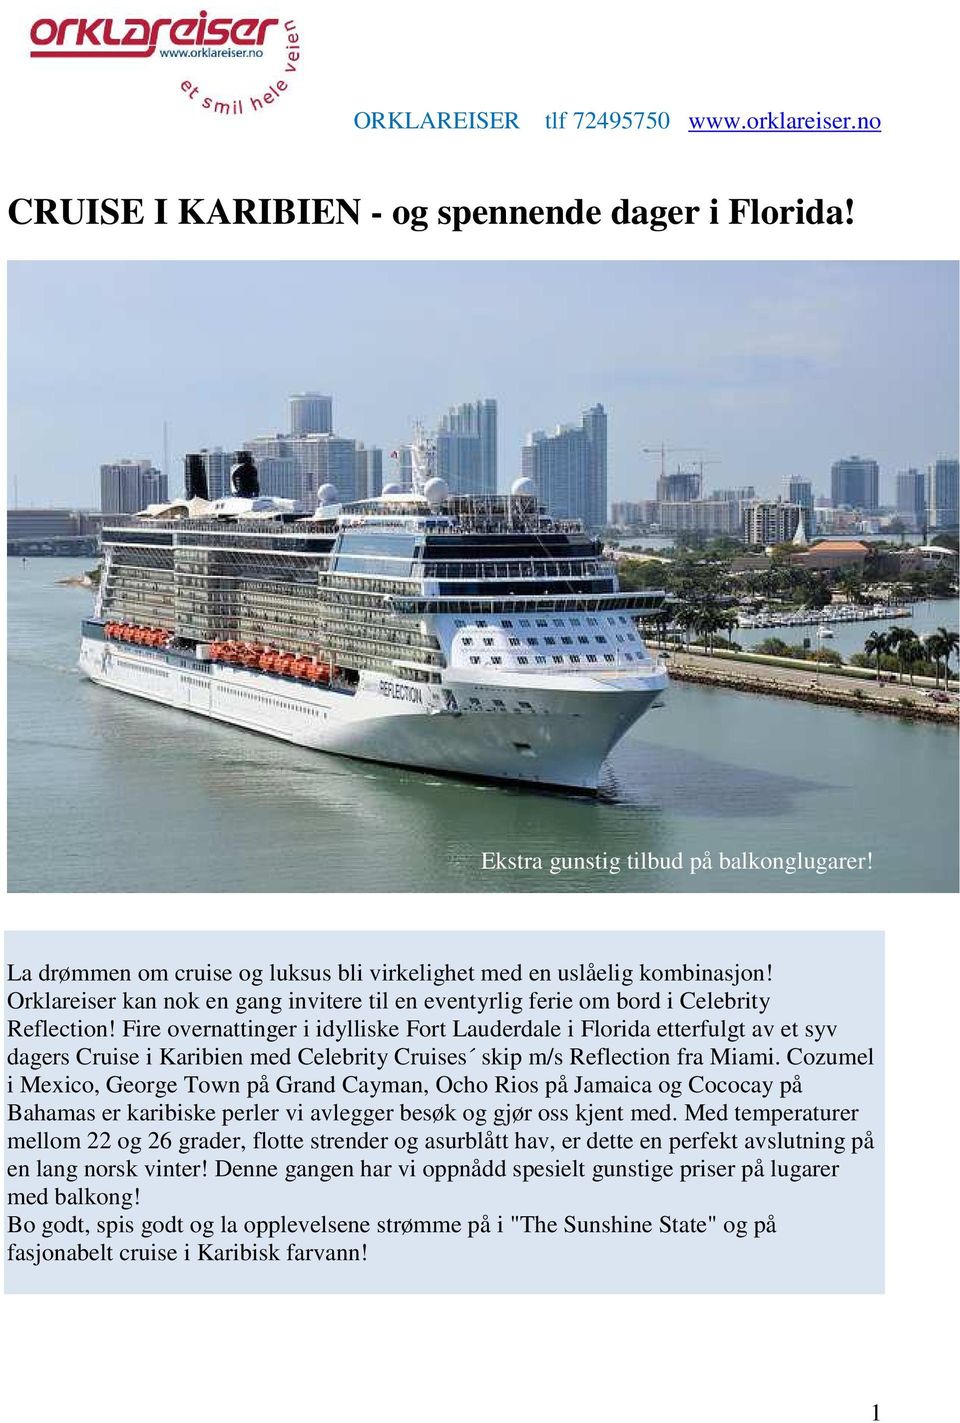 Fire overnattinger i idylliske Fort Lauderdale i Florida etterfulgt av et syv dagers Cruise i Karibien med Celebrity Cruises skip m/s Reflection fra Miami.